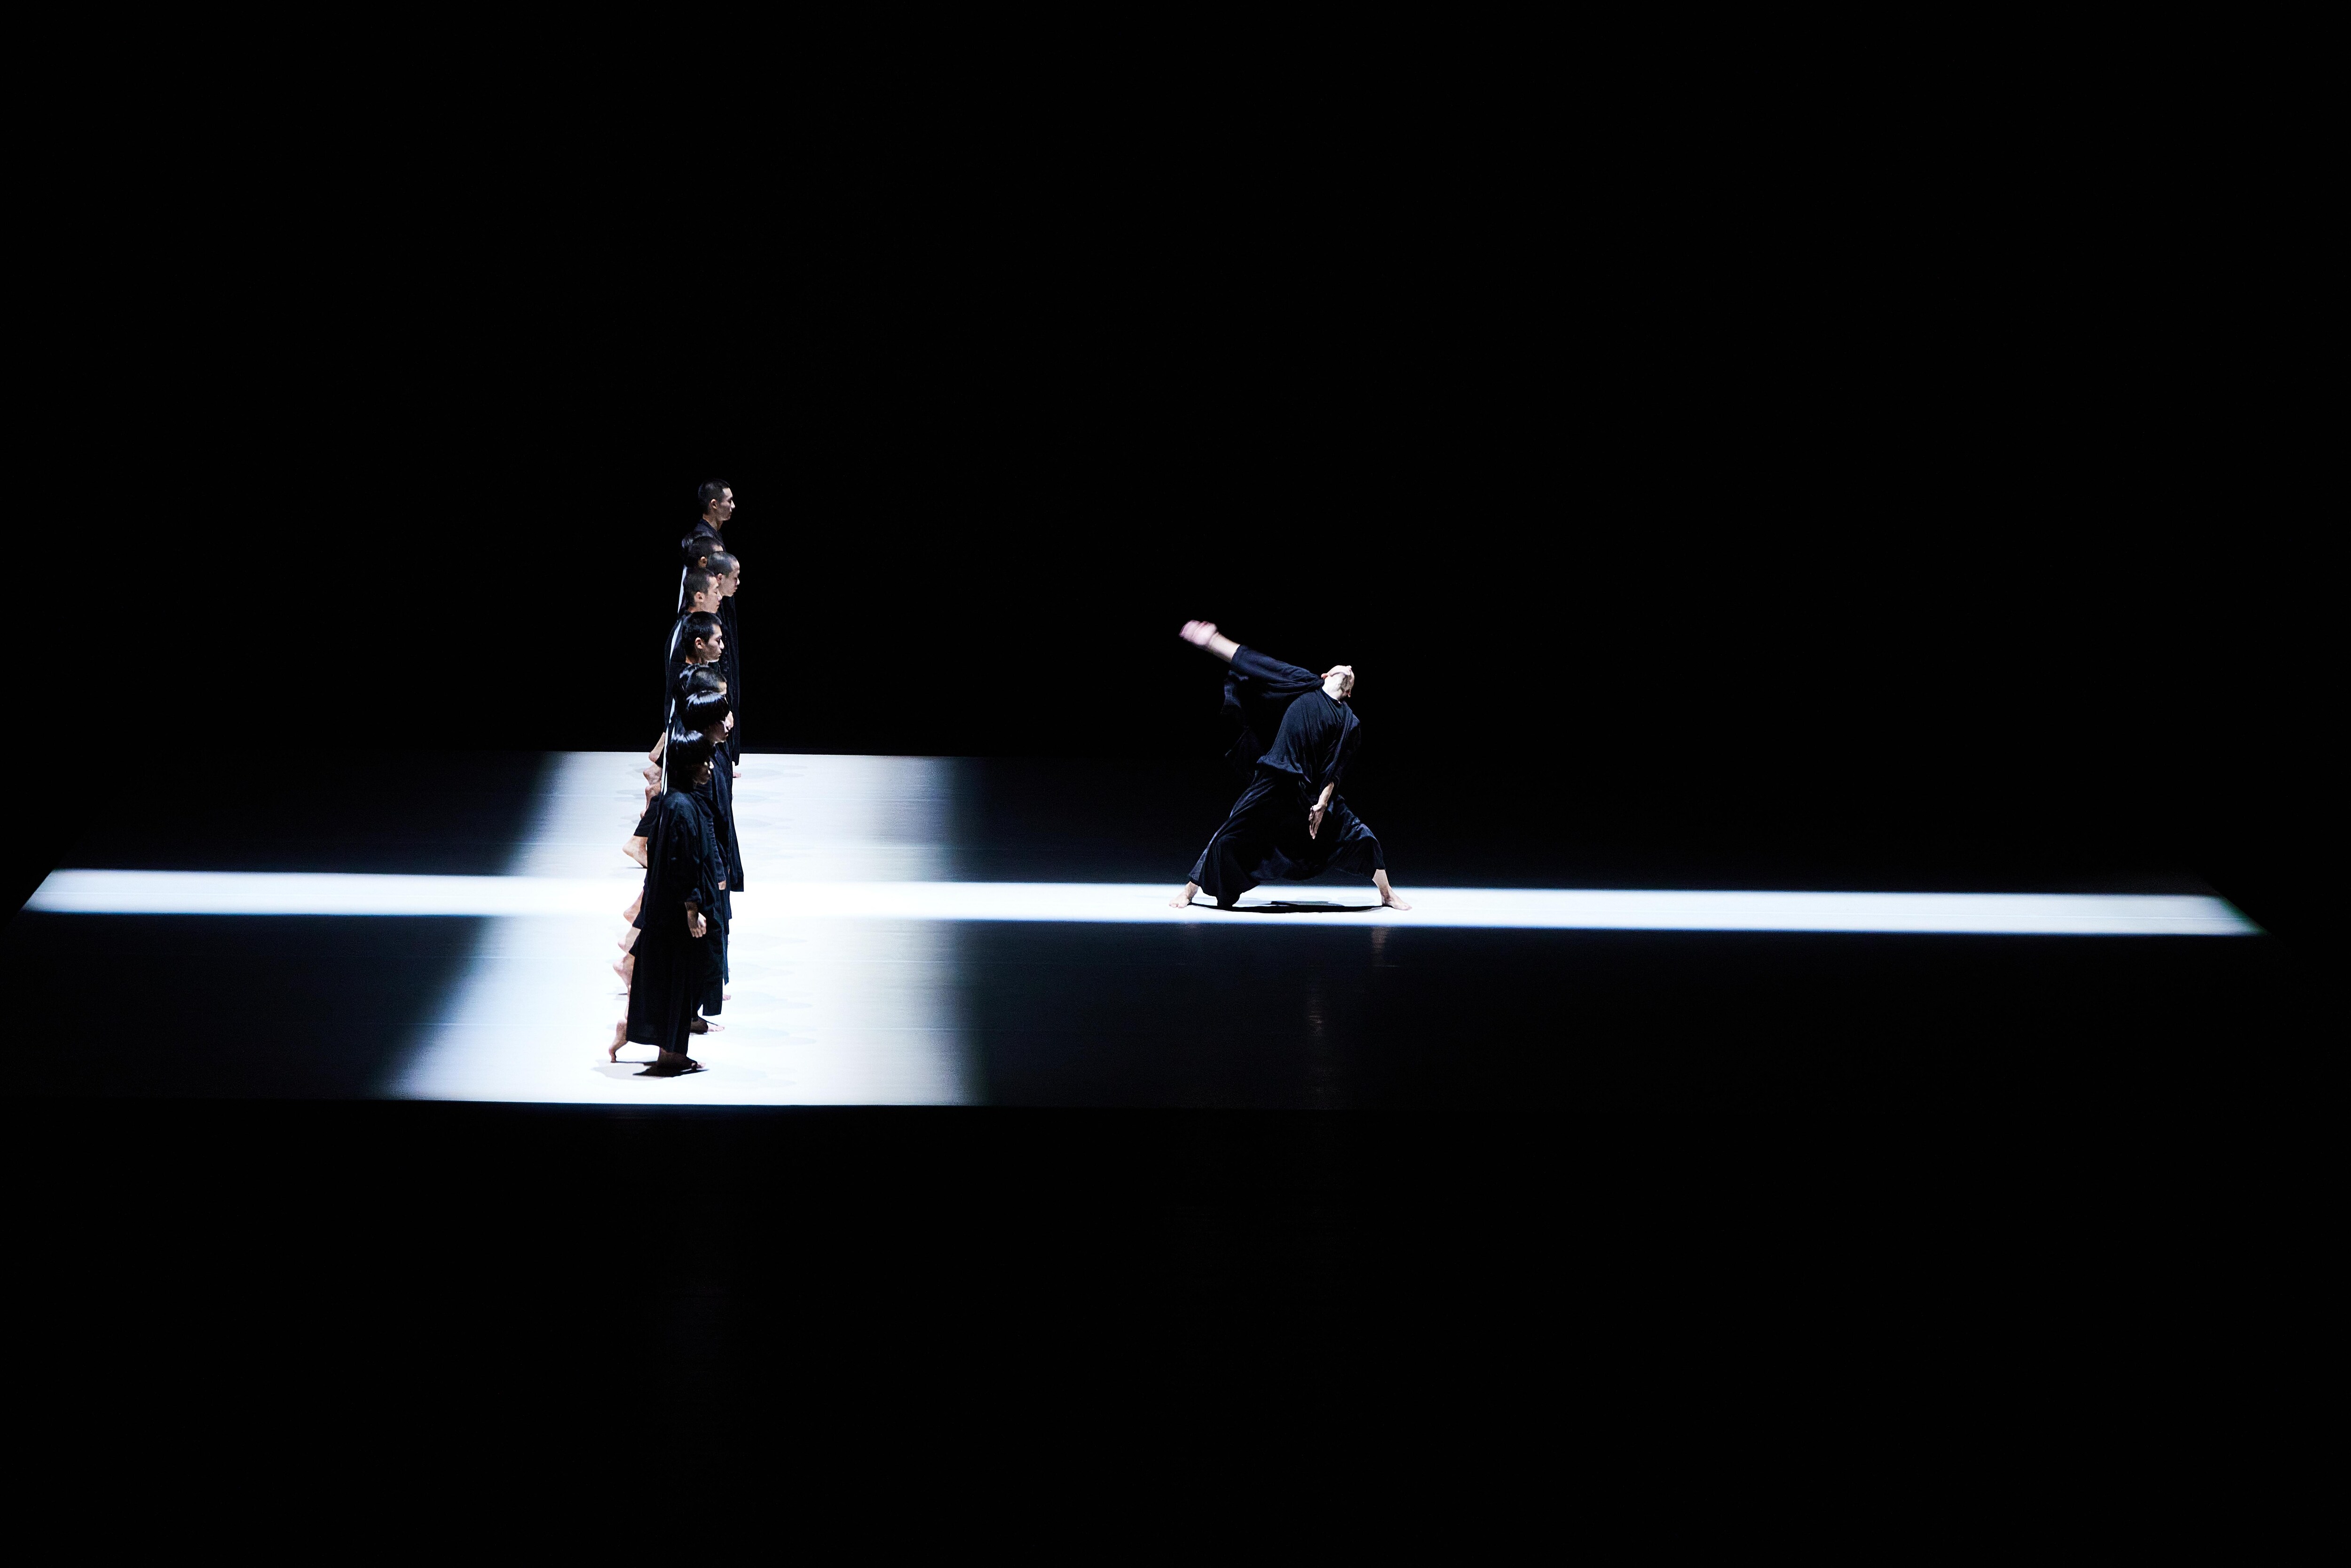 一列舞者站在白色的光路上，面向獨自站在光路上的另一名舞者